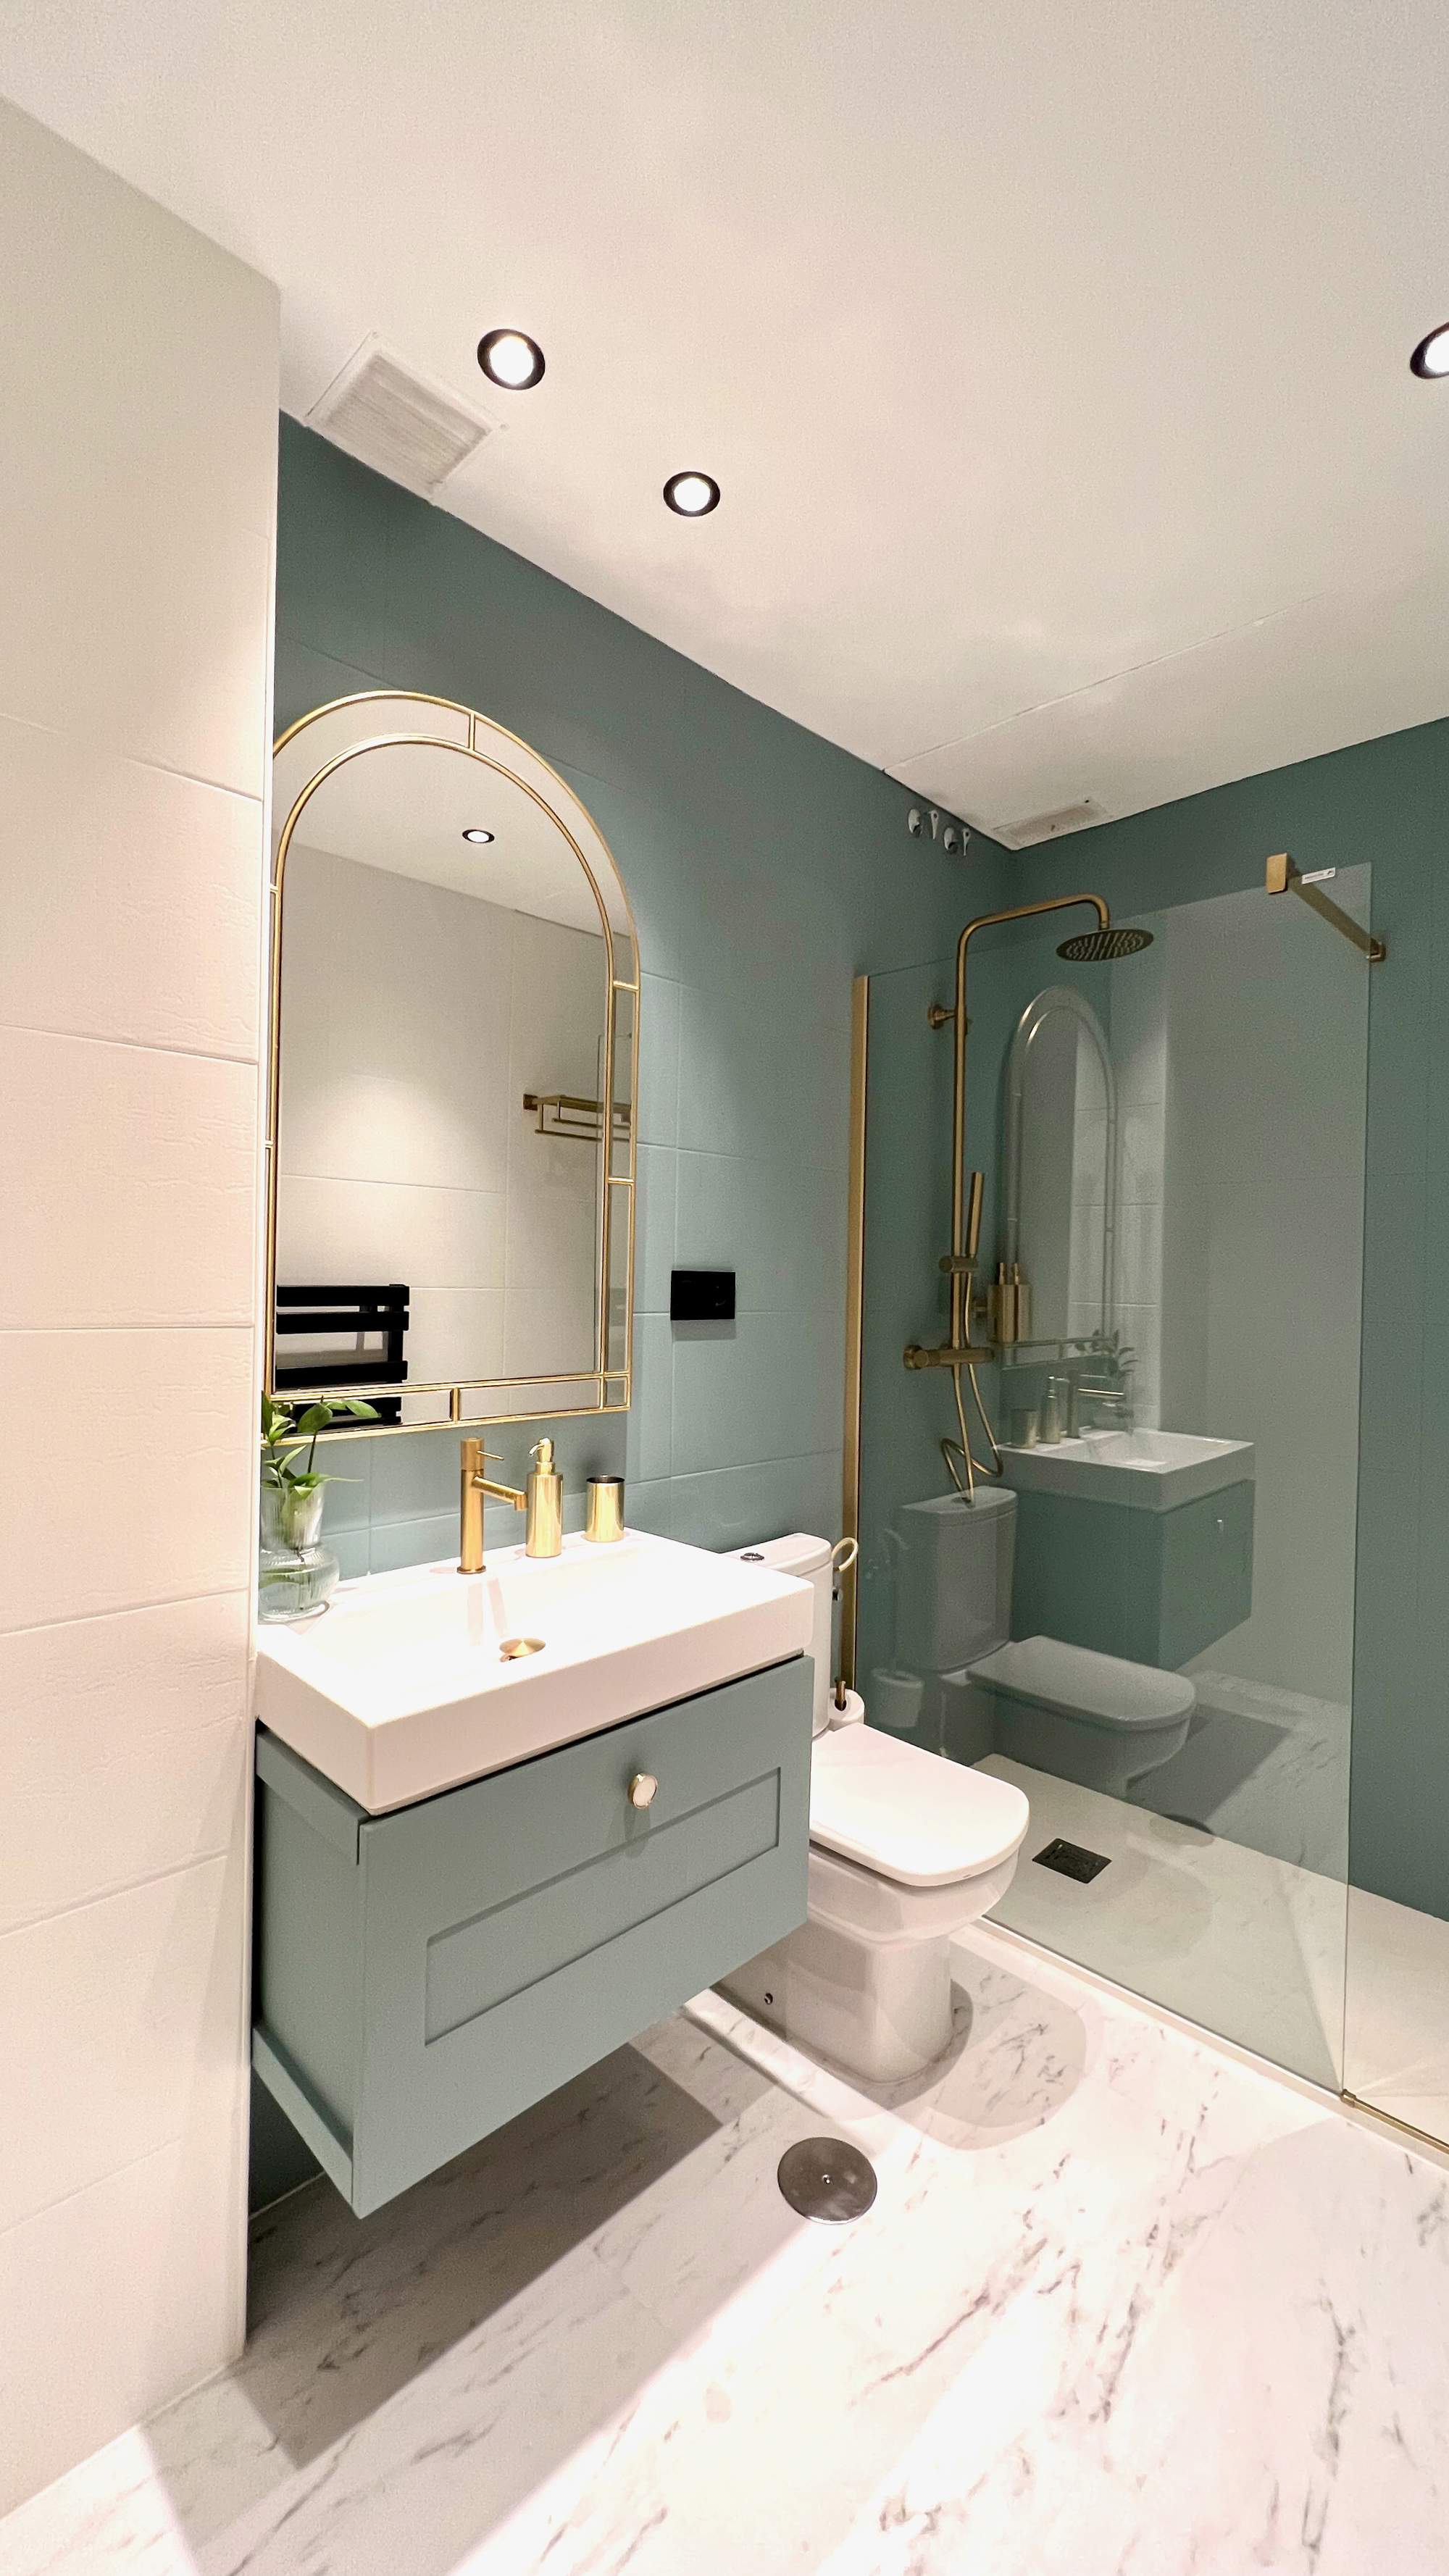 Baño con mueble de color verde azulado, igual que la pared, y ducha con perfil dorado. 